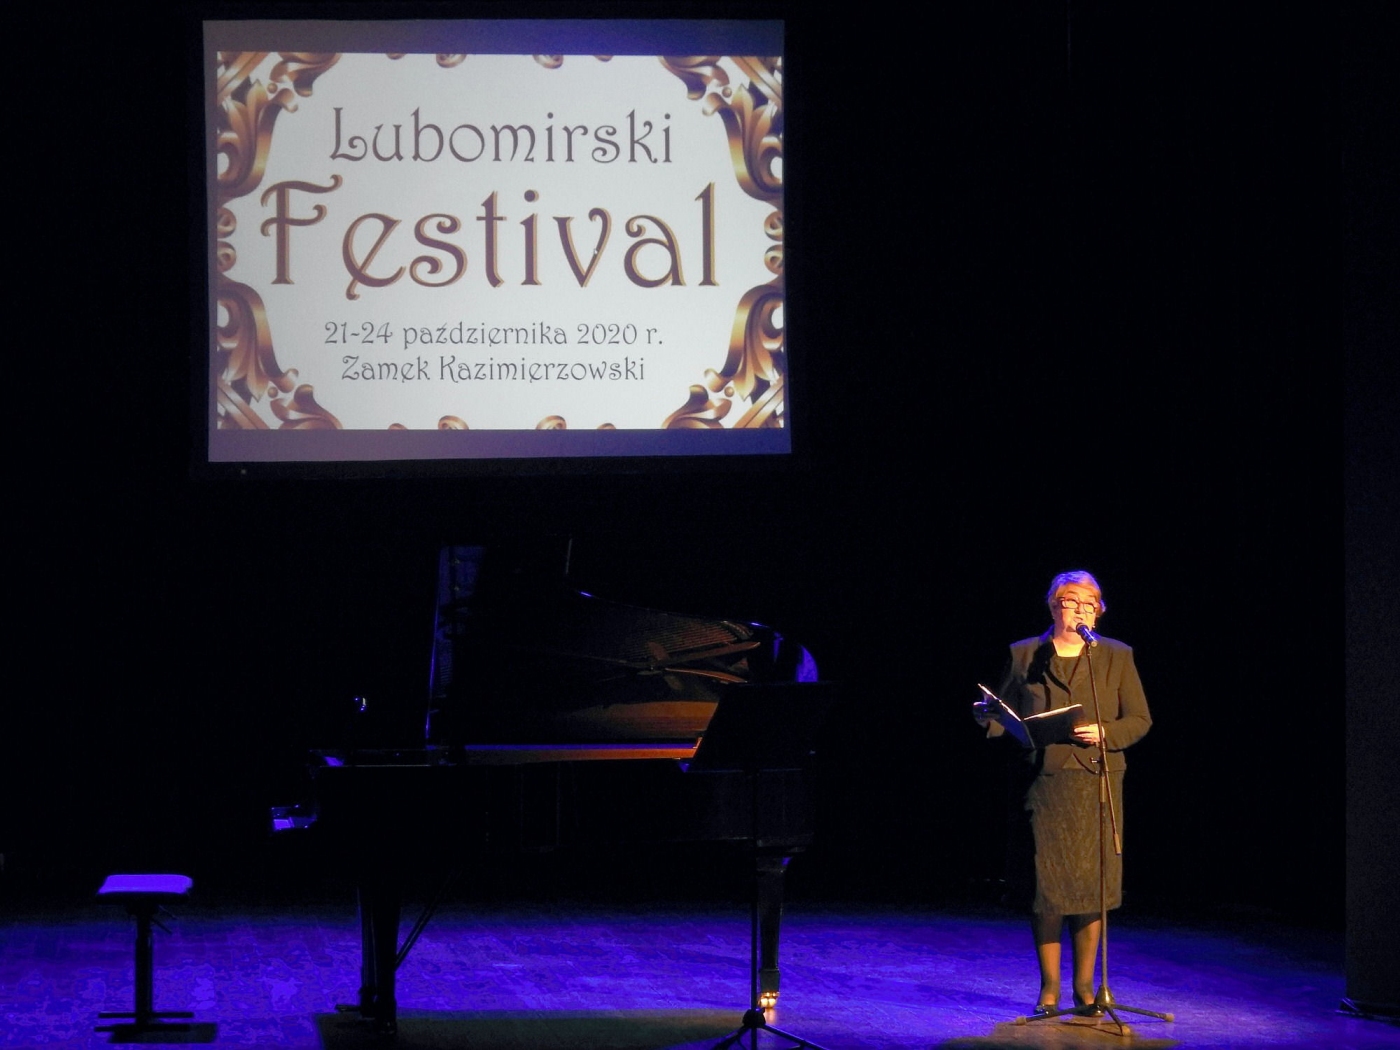  Lubomirski Festiwal – dzień pierwszy